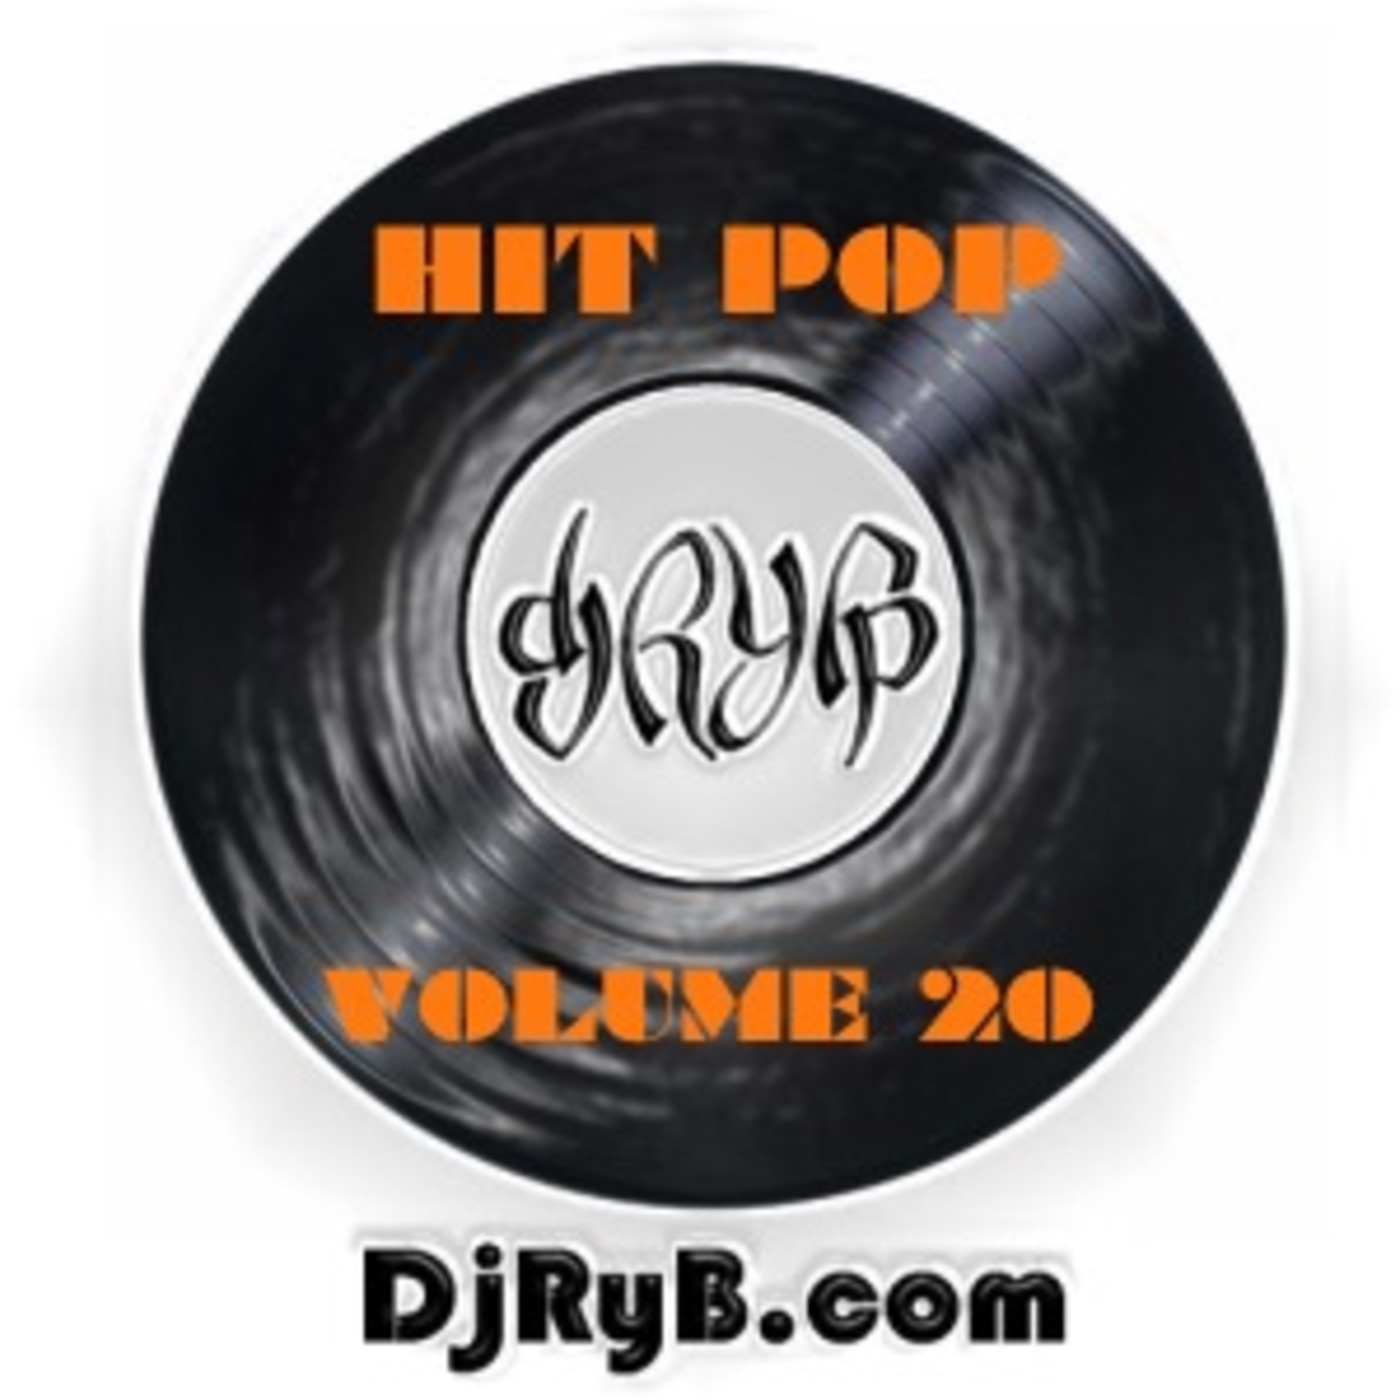 Hit Pop: The Remixes - Volume 20